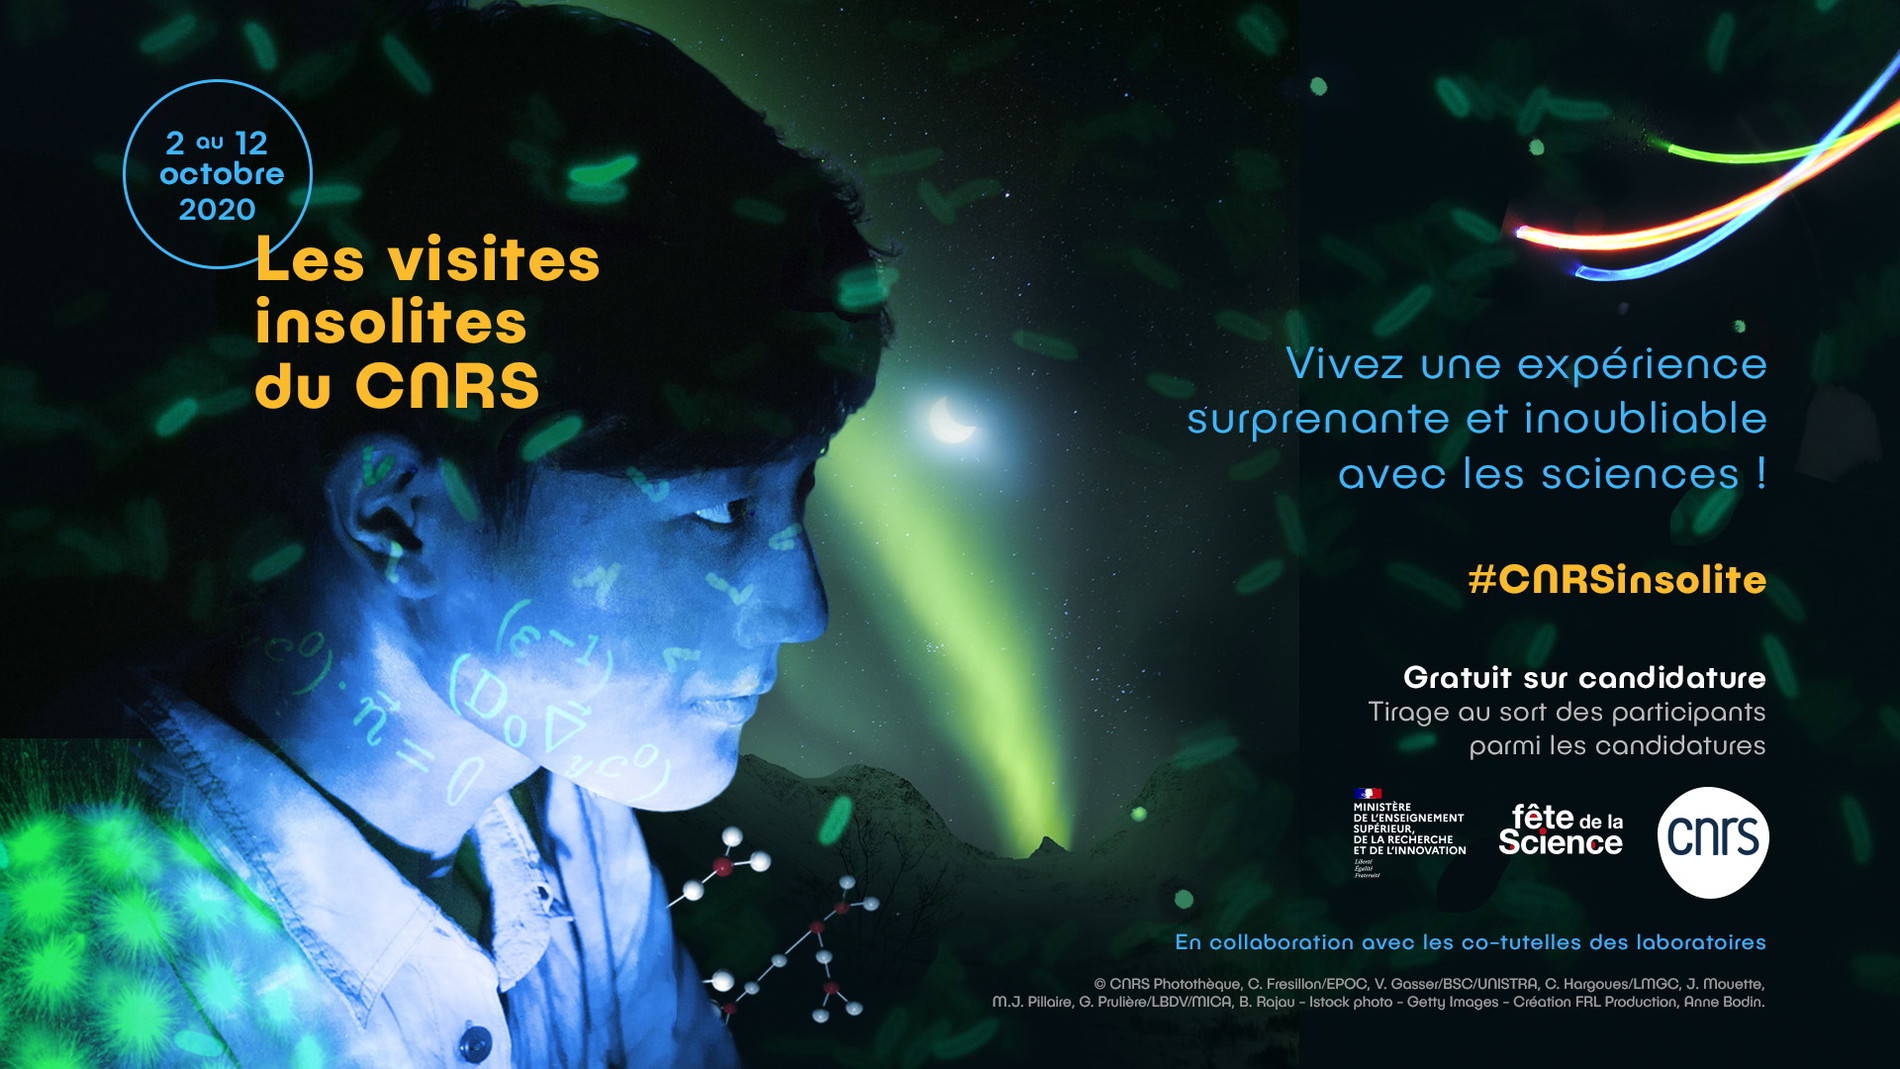 CNRS VISITES INSOLITES | COMMUNICATION RÉSEAUX SOCIAUX